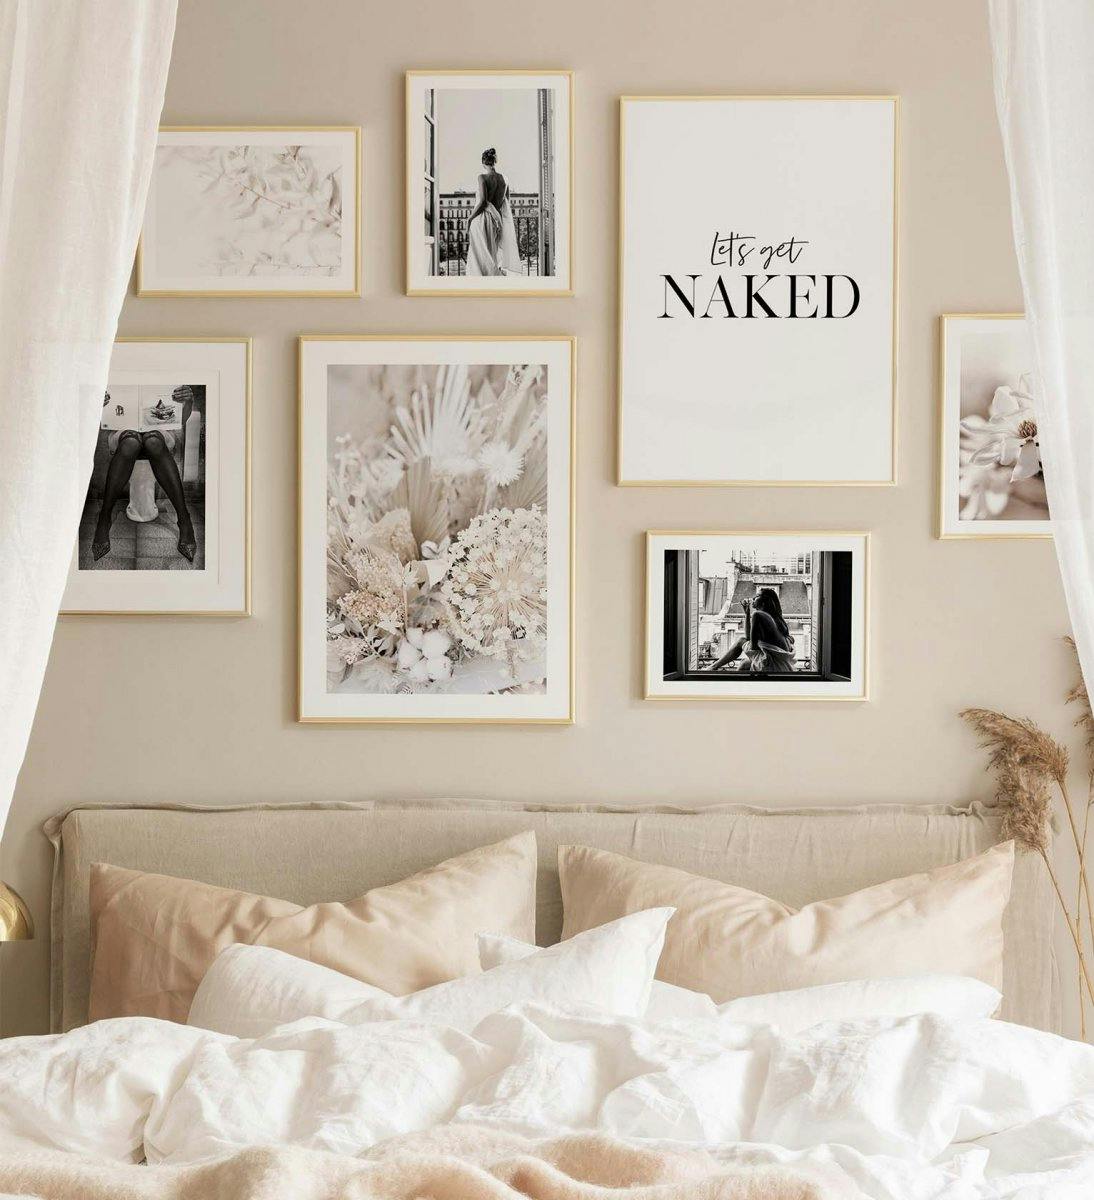 Monokrome kunst kombineret med beige farver giver en trendy billedvæg til soveværelset